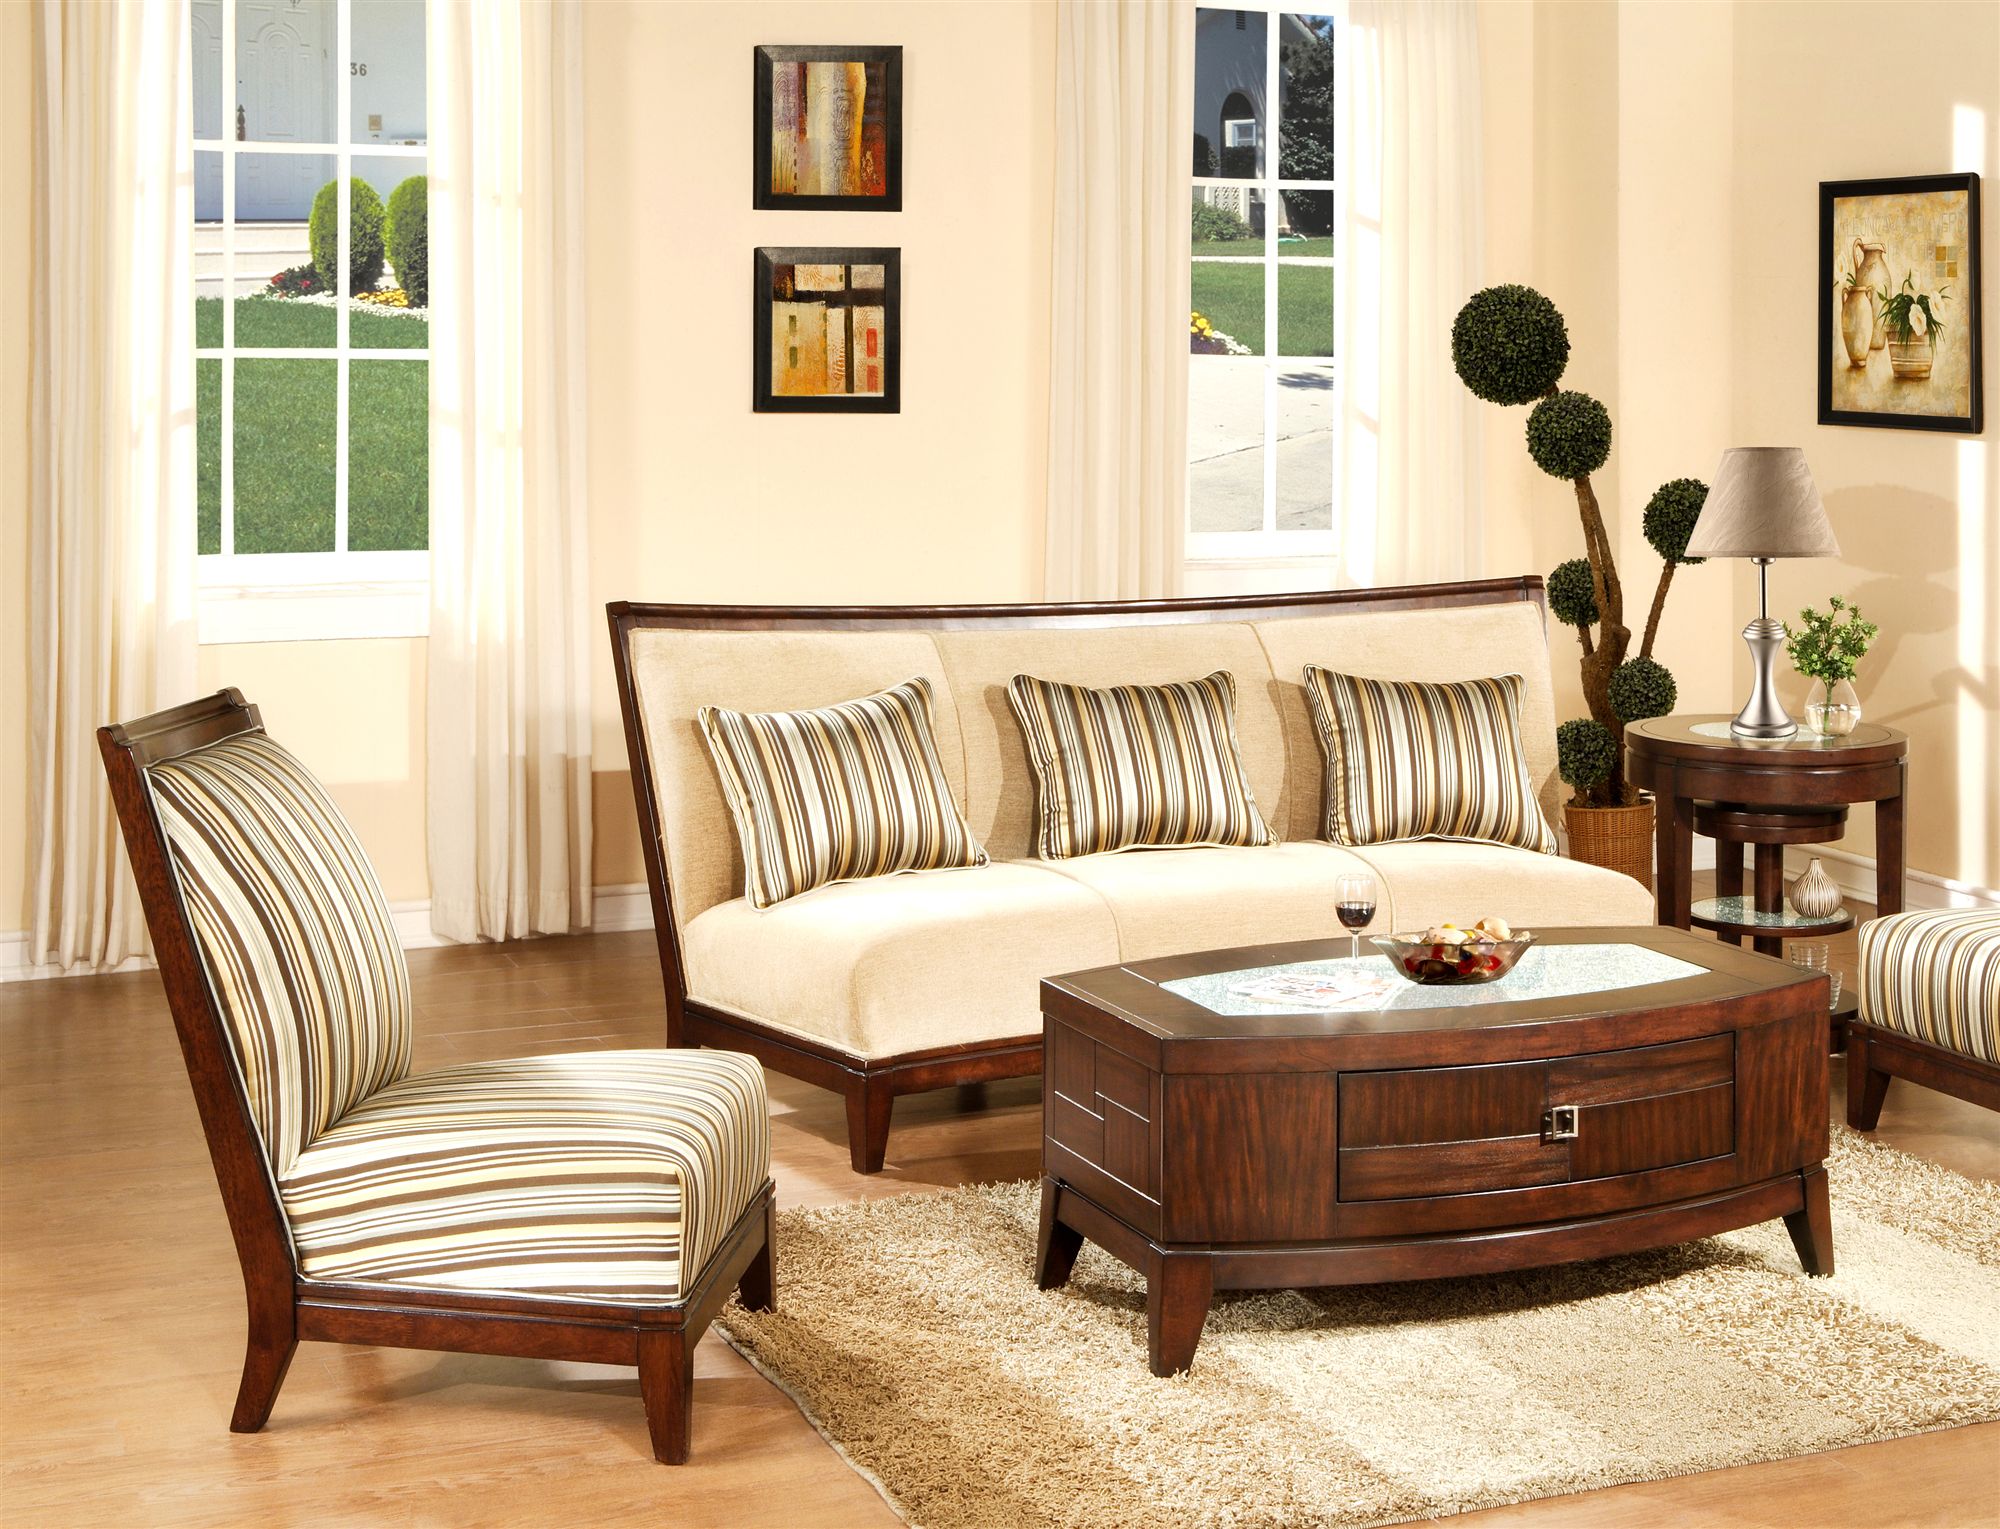 Prodigious furniture ... furniture living room ~ prodigious living room furnitures and  embellishment inspiration BFAEDMC